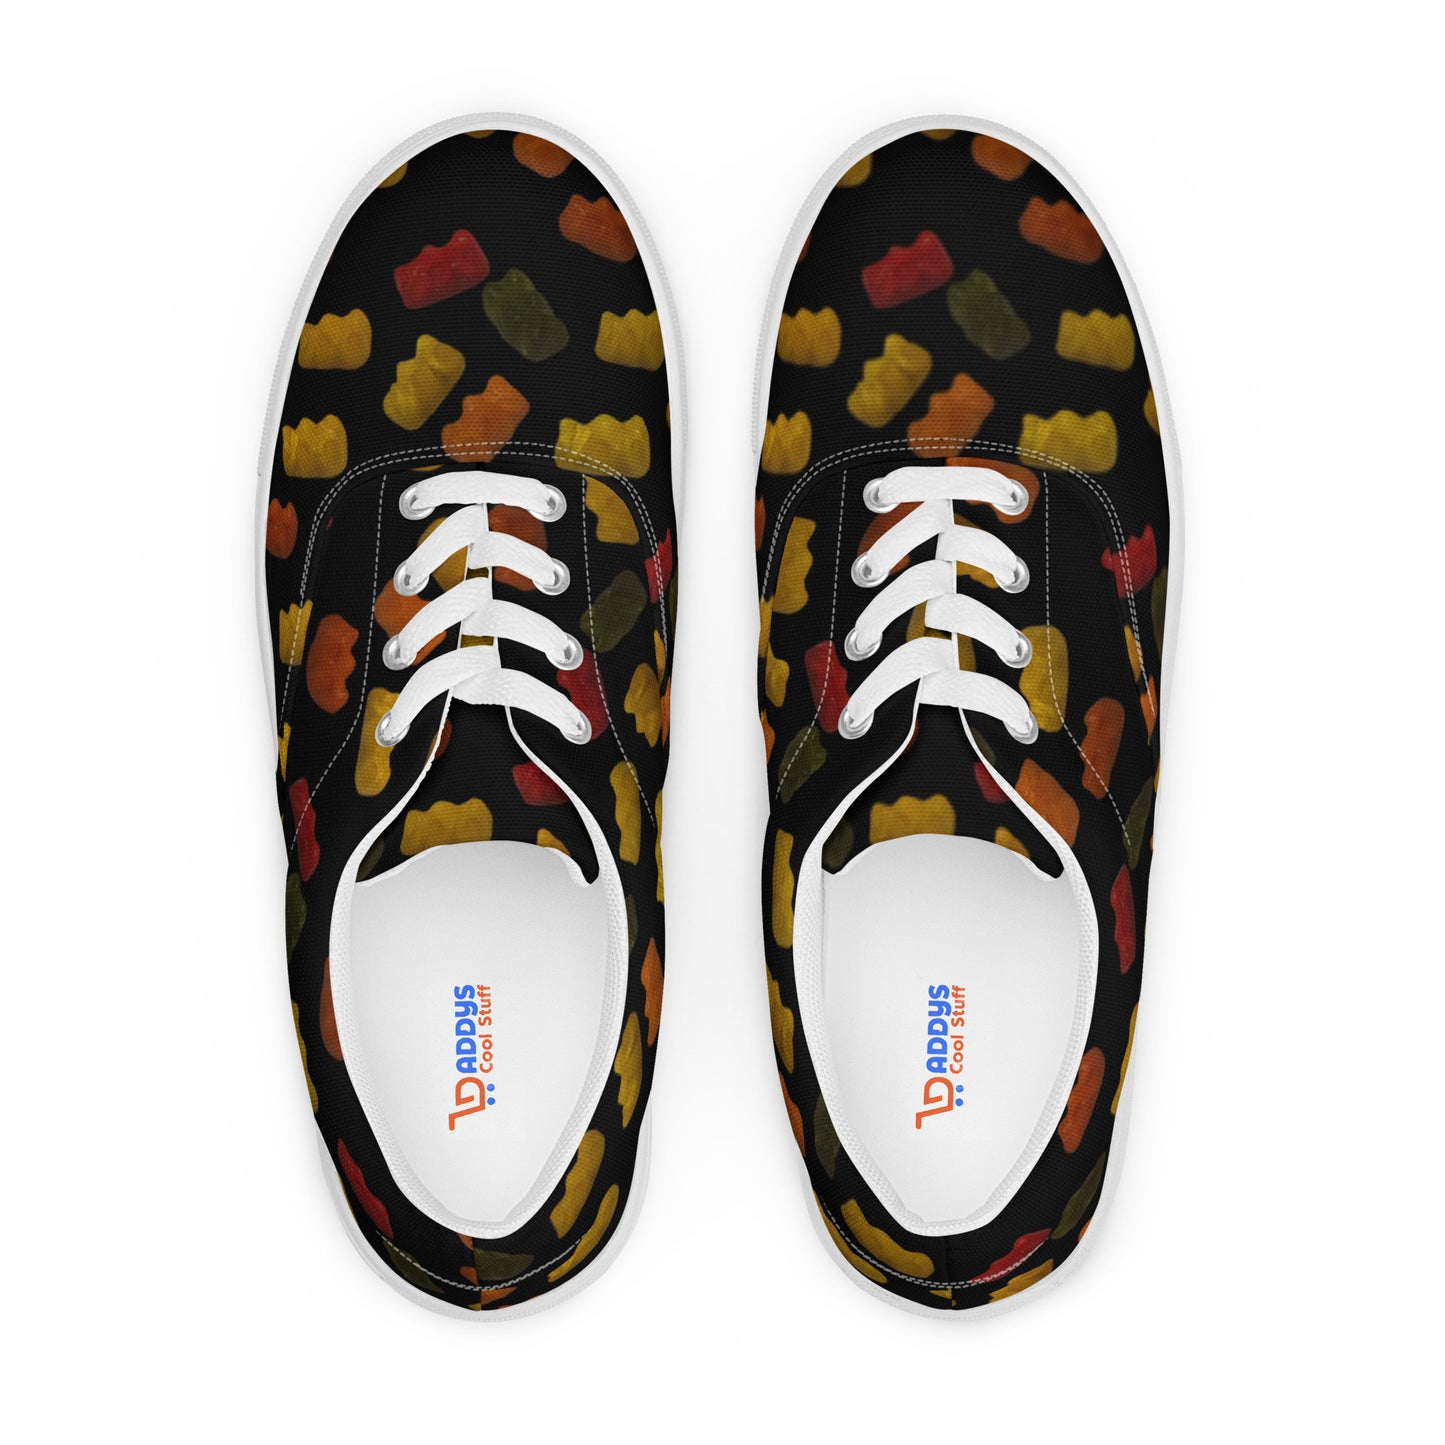 Gummy Bears - Men’s lace-up canvas shoes - Black